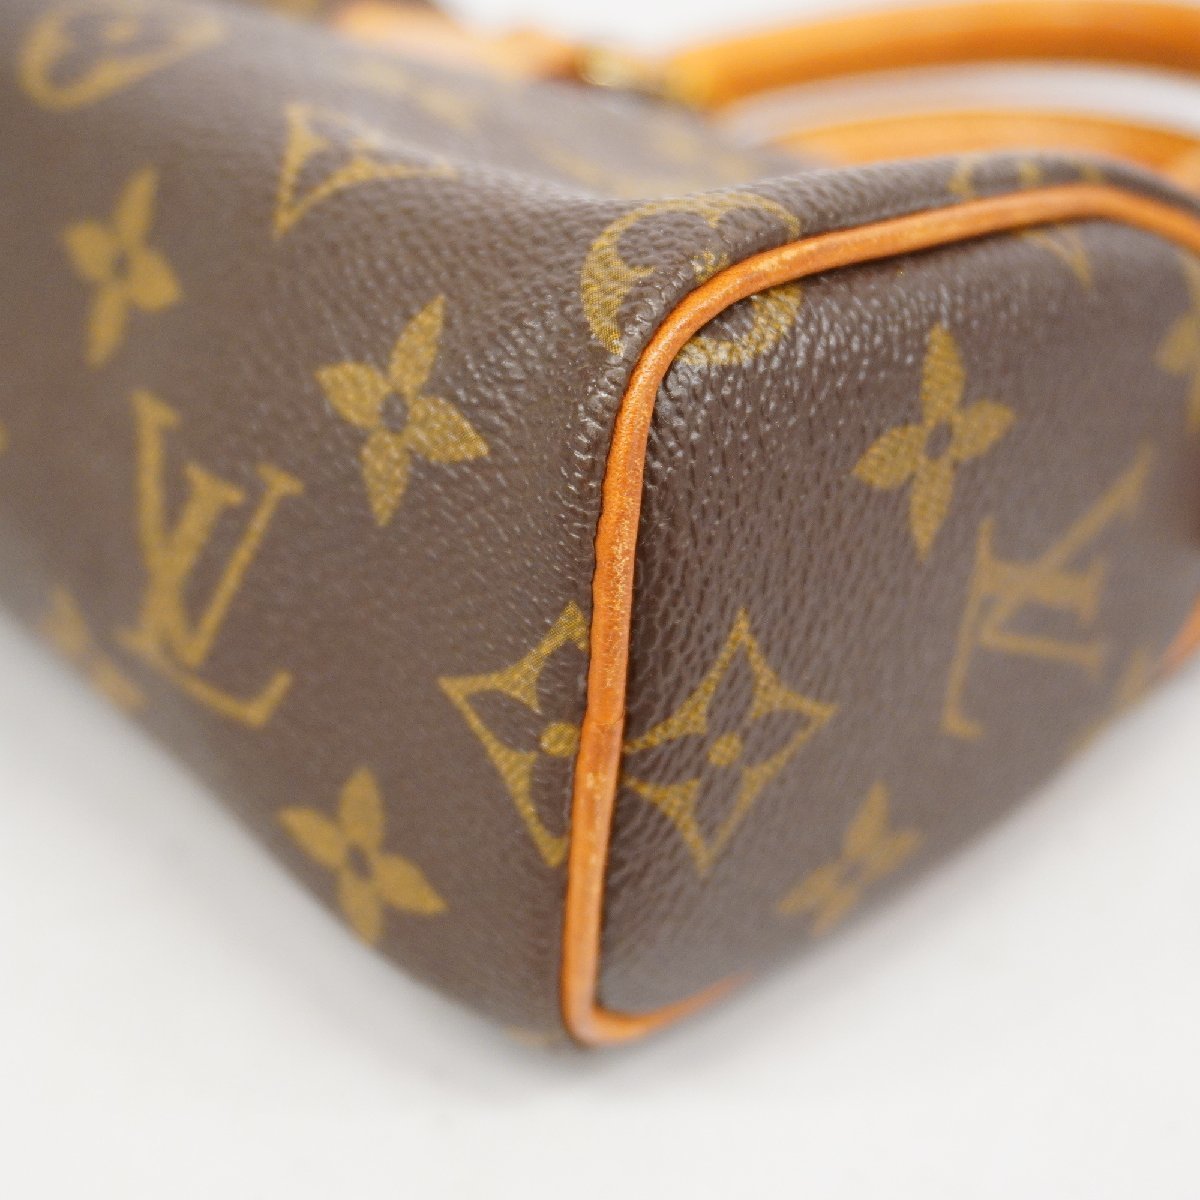 Louis Vuitton Mini Speedy Nano Handbag Monogram